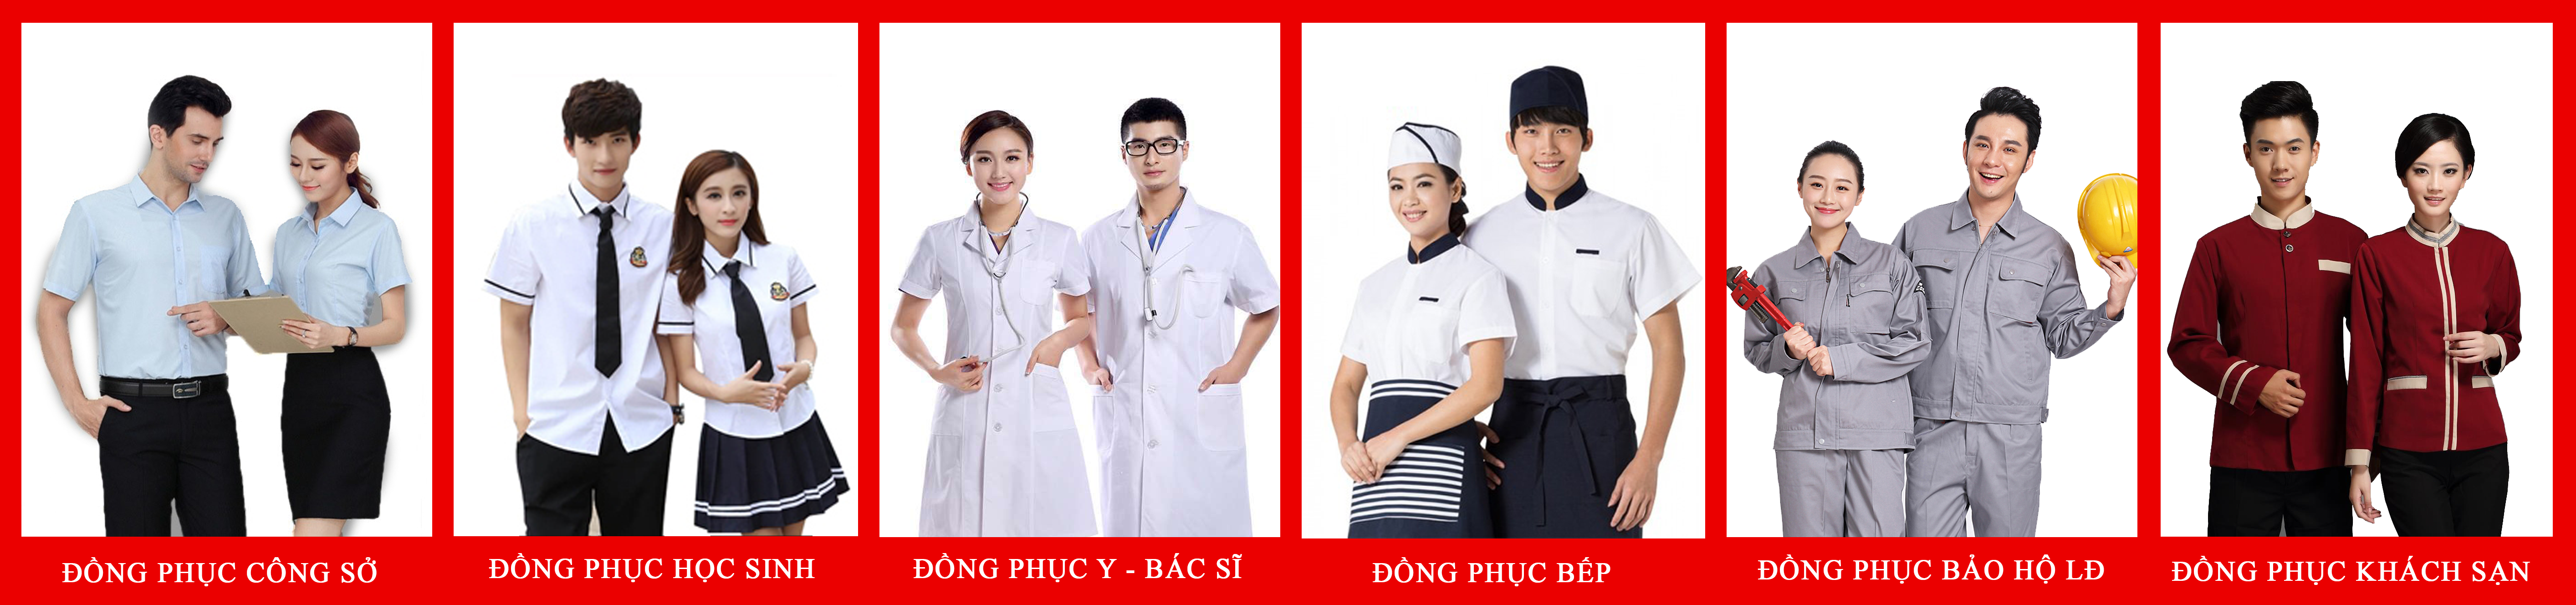 May đồng phục đẹp tại Anmac Việt Nam